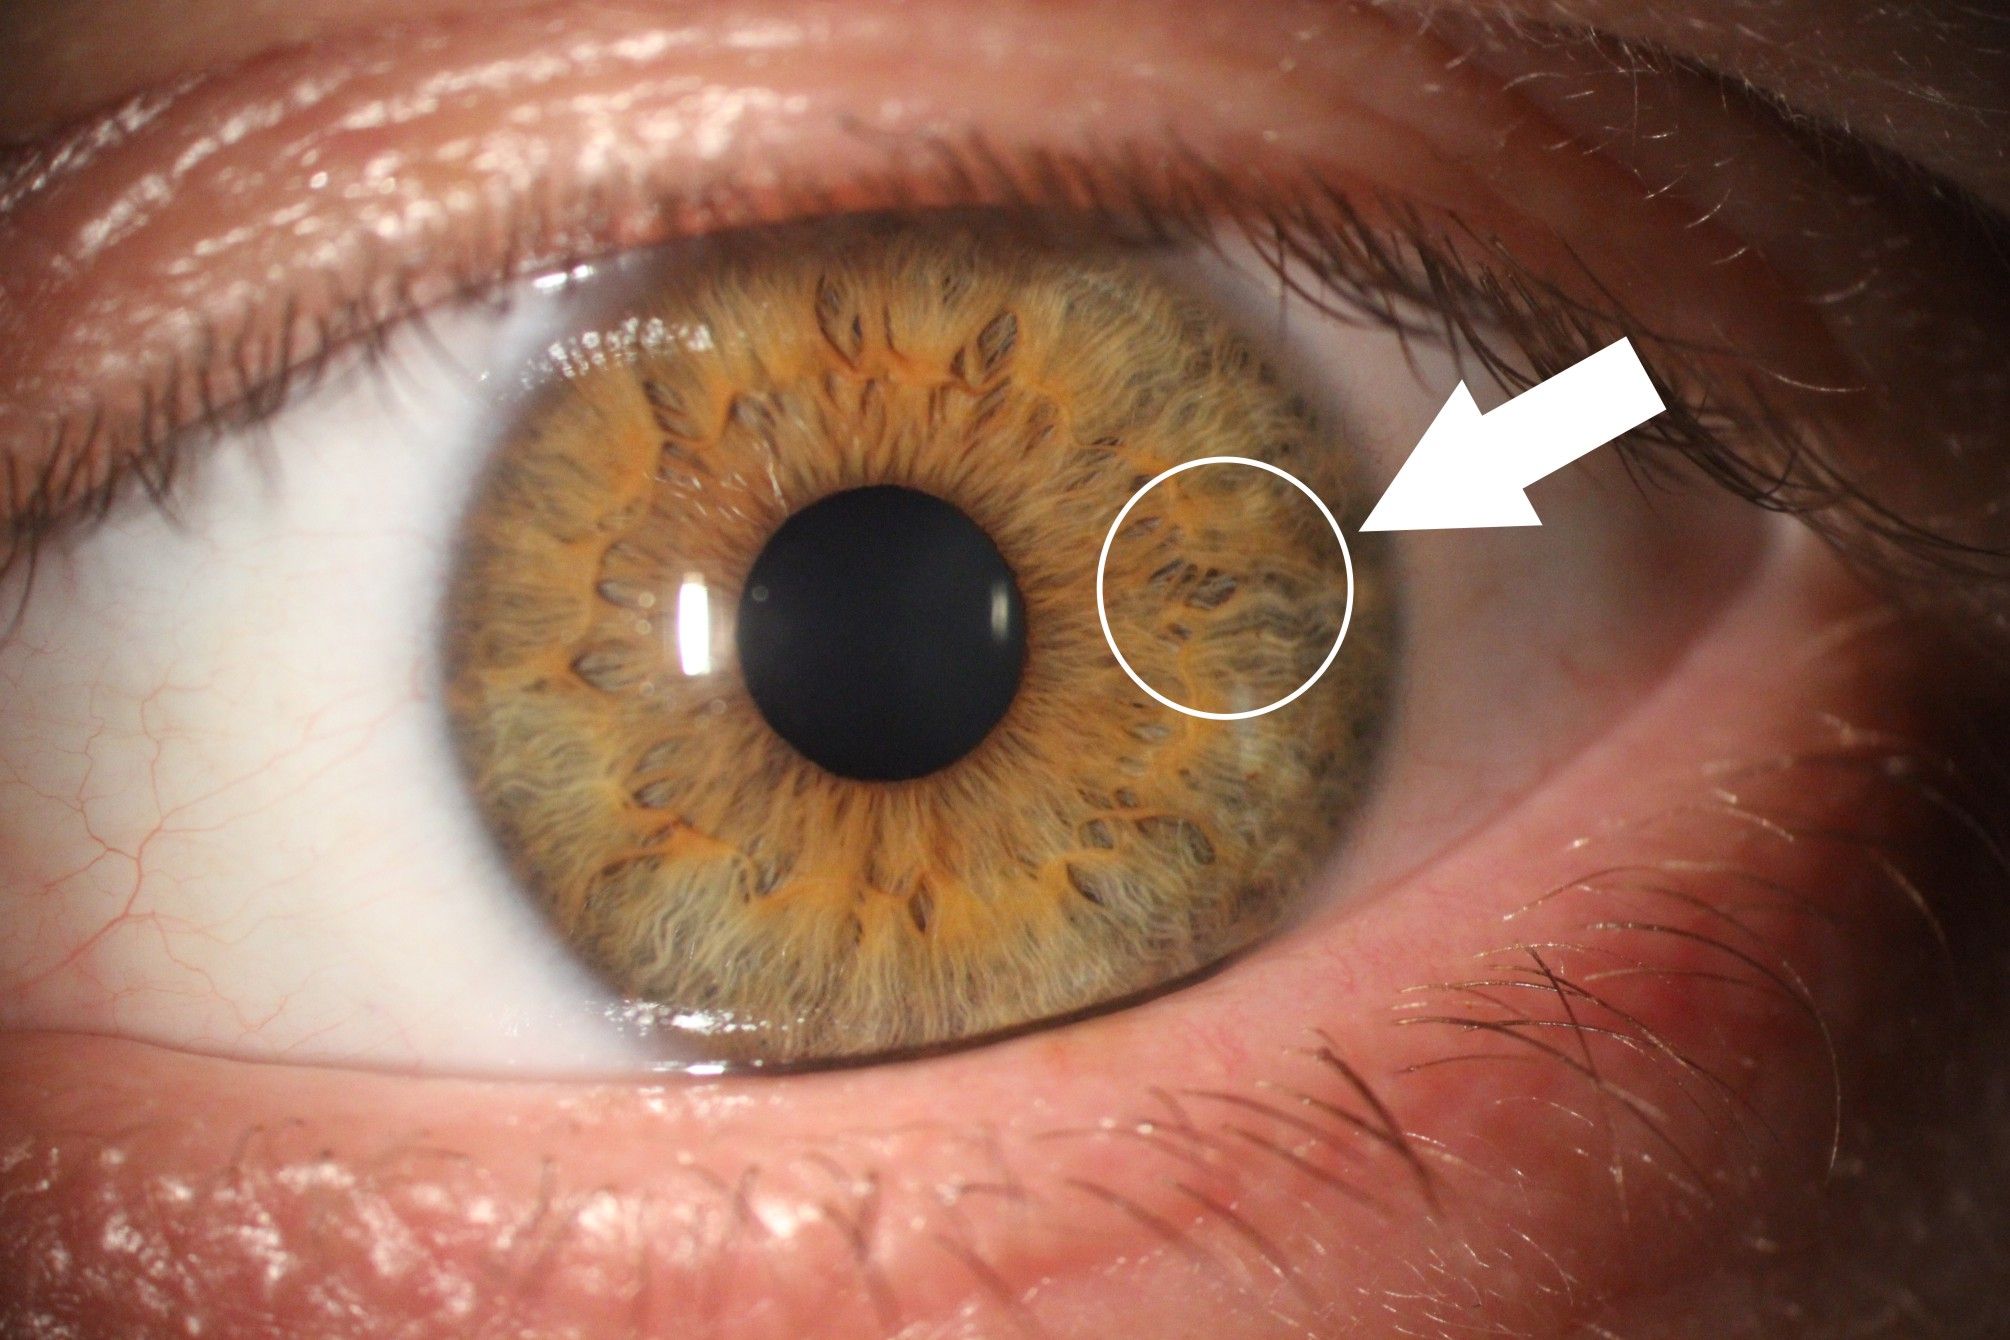 Tęczówka oka z zaznaczoną strzałką wskazującą na zmianę na tęczówce